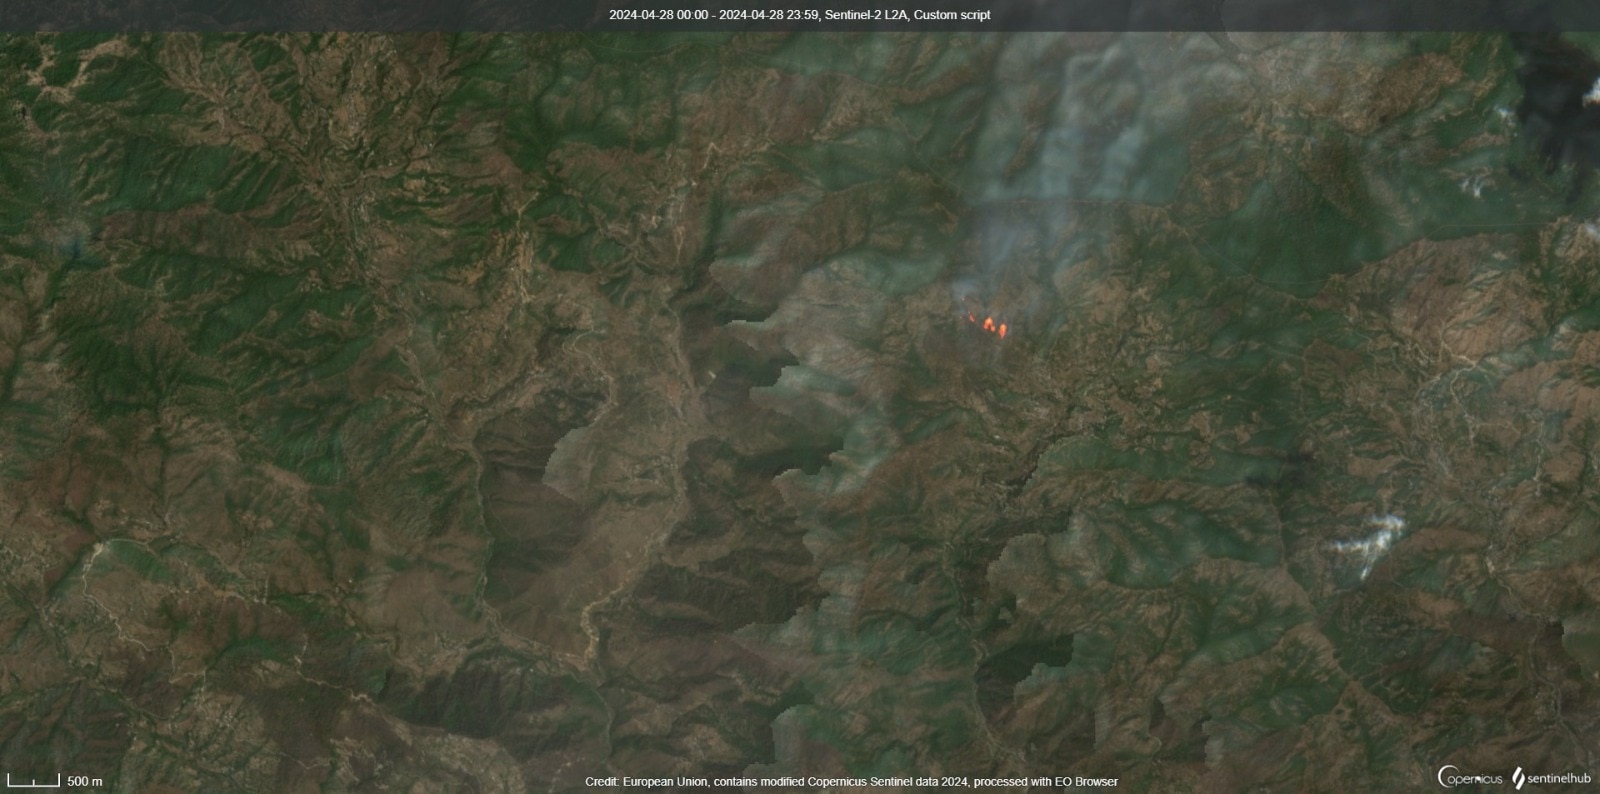 satellite captures extent of uttarakhand forest fire